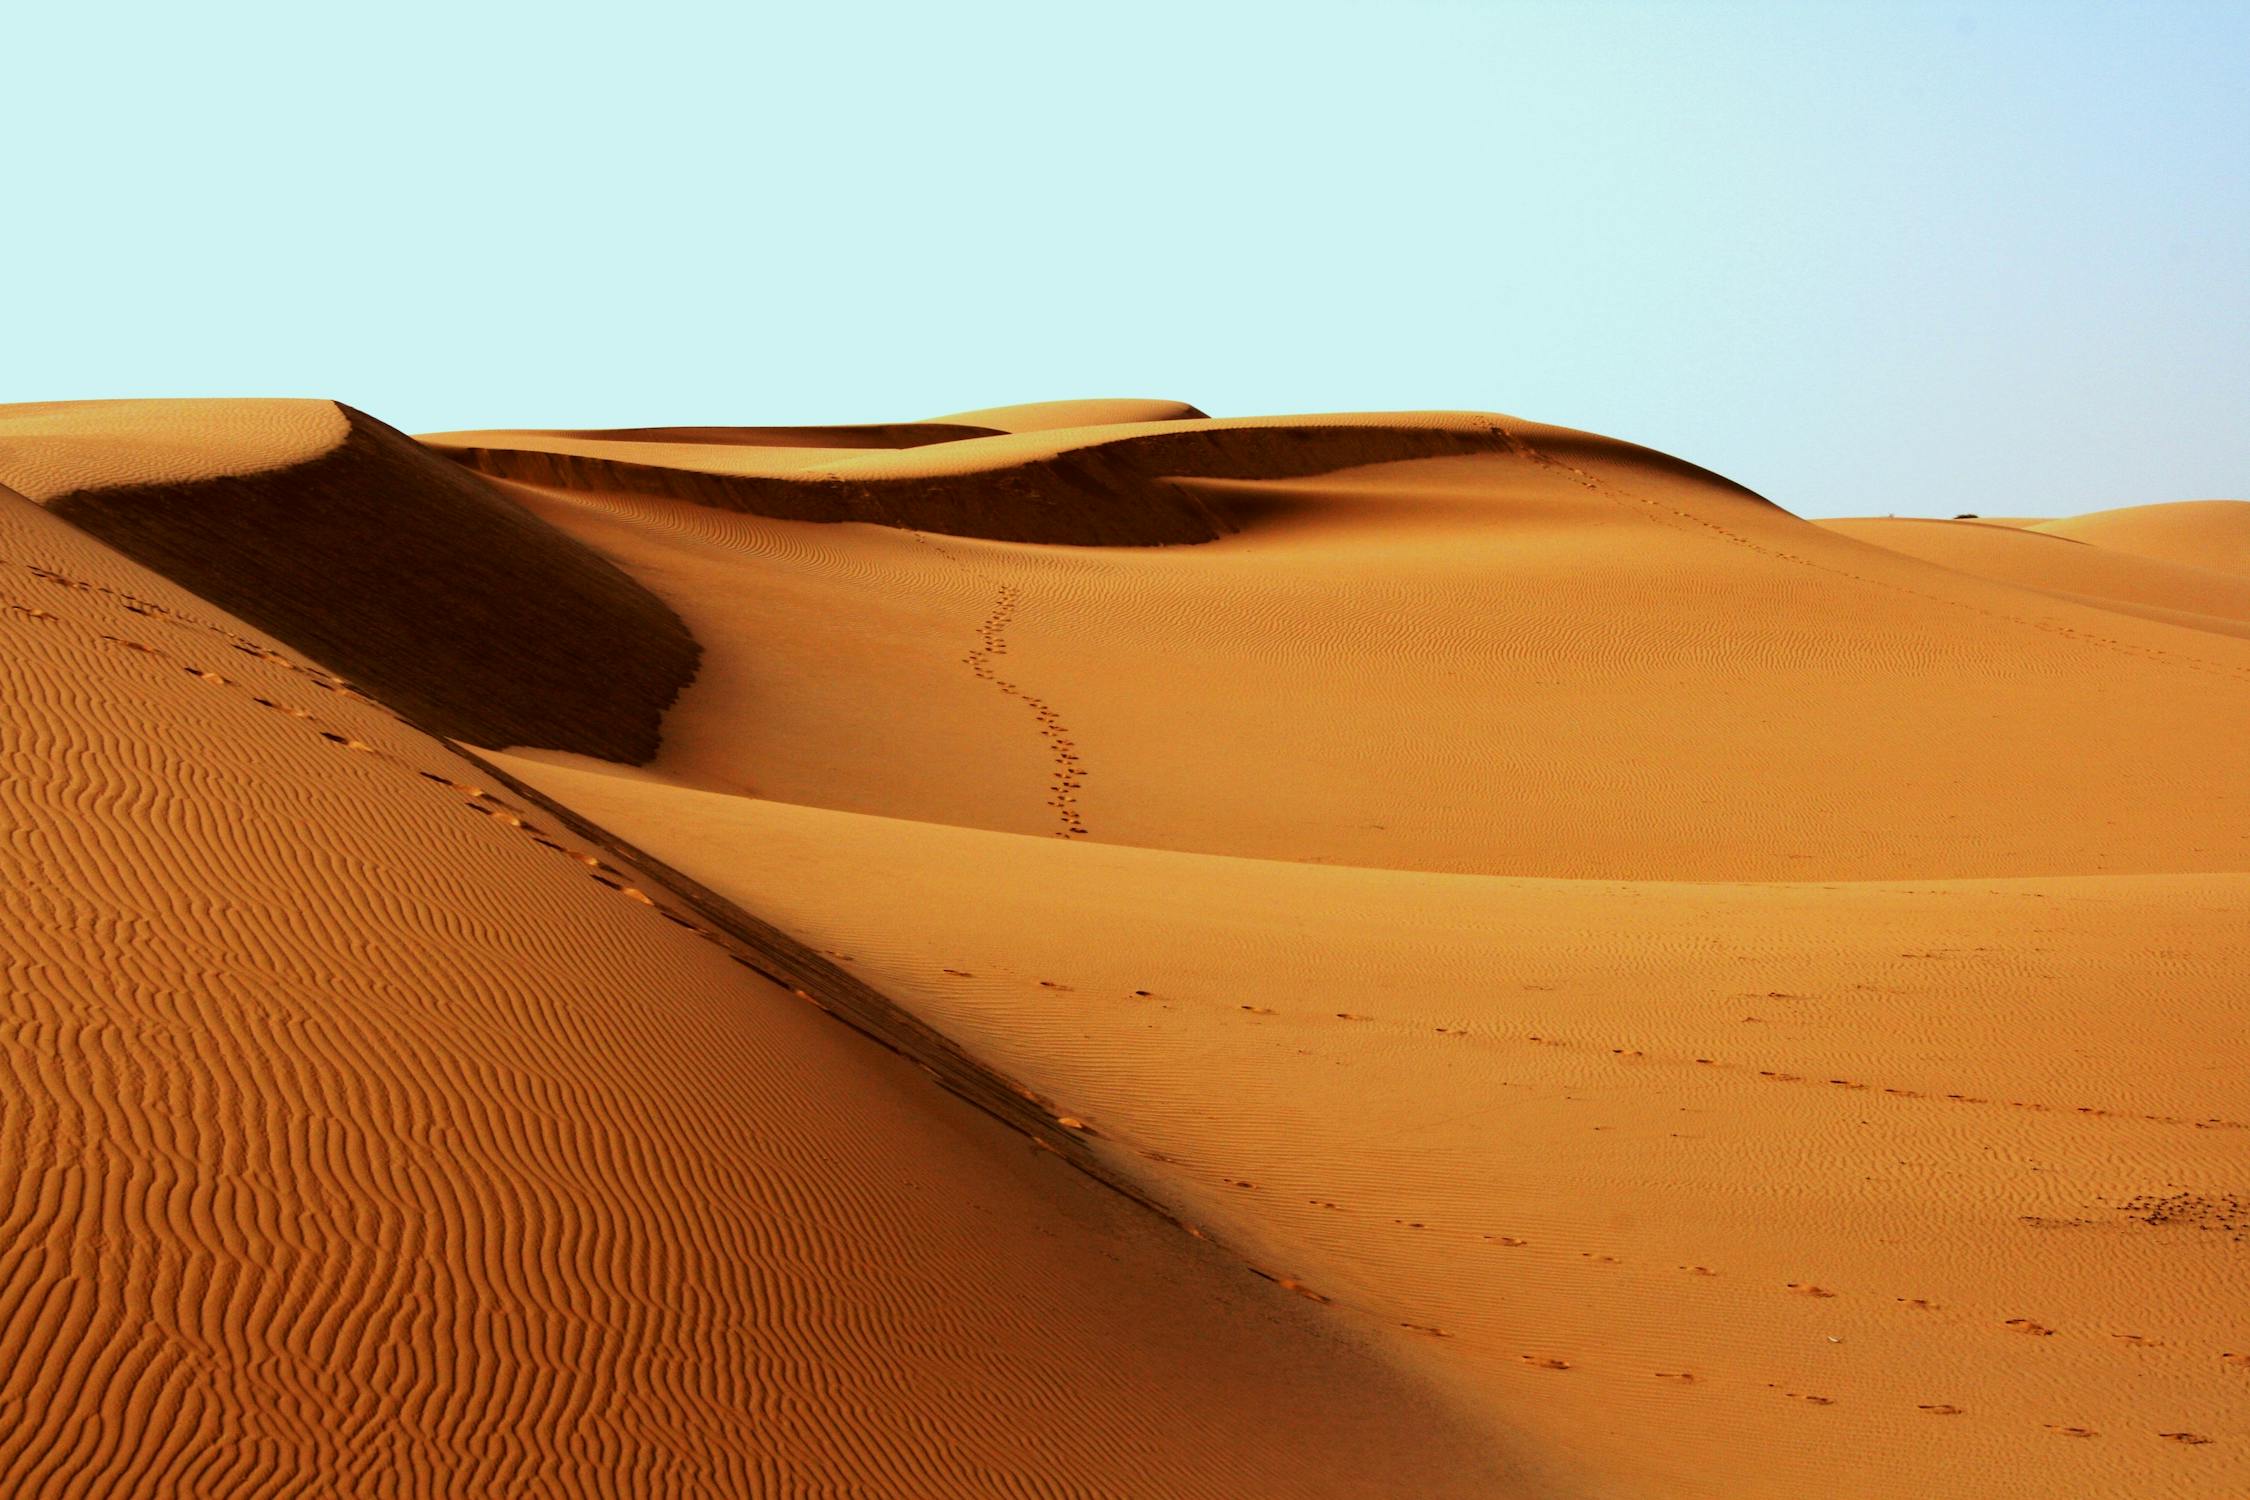 库布其国际沙漠论坛中心-亿利库布其沙漠生态旅游有限公司